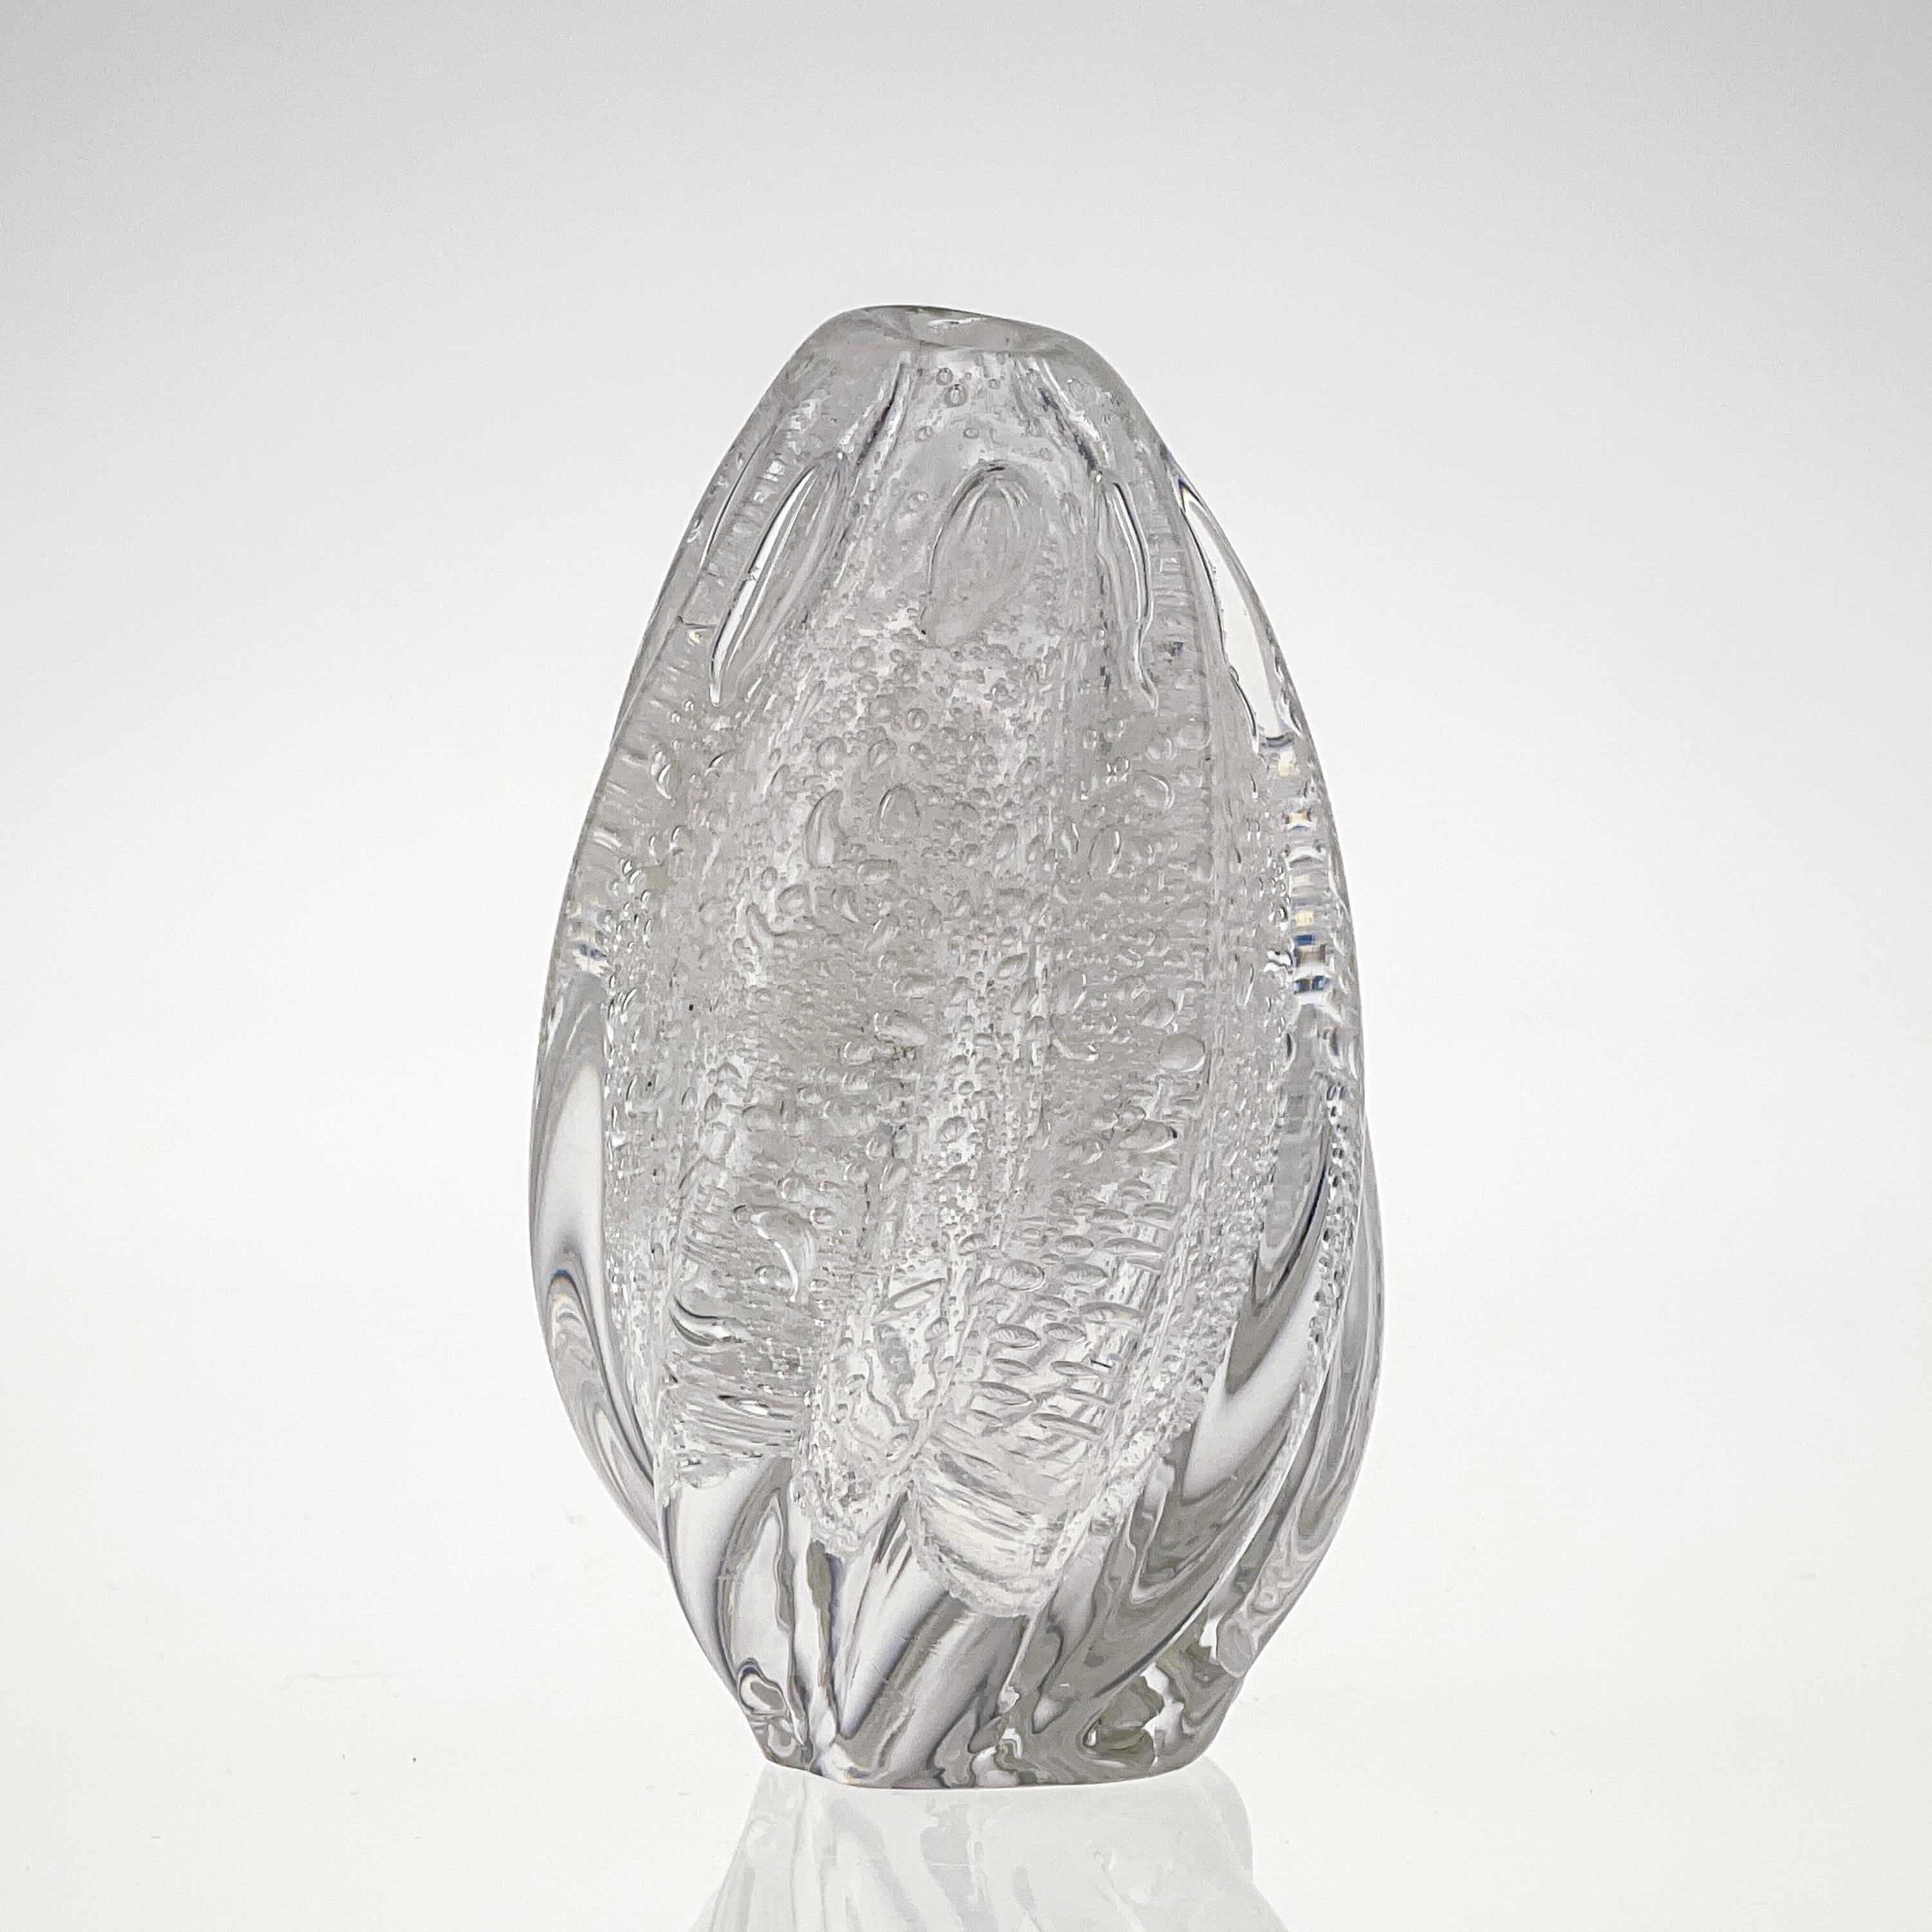 Finnish Scandinavian Modern Tapio Wirkkala Crystal Glass Art Vase Handblown Iittala 1948